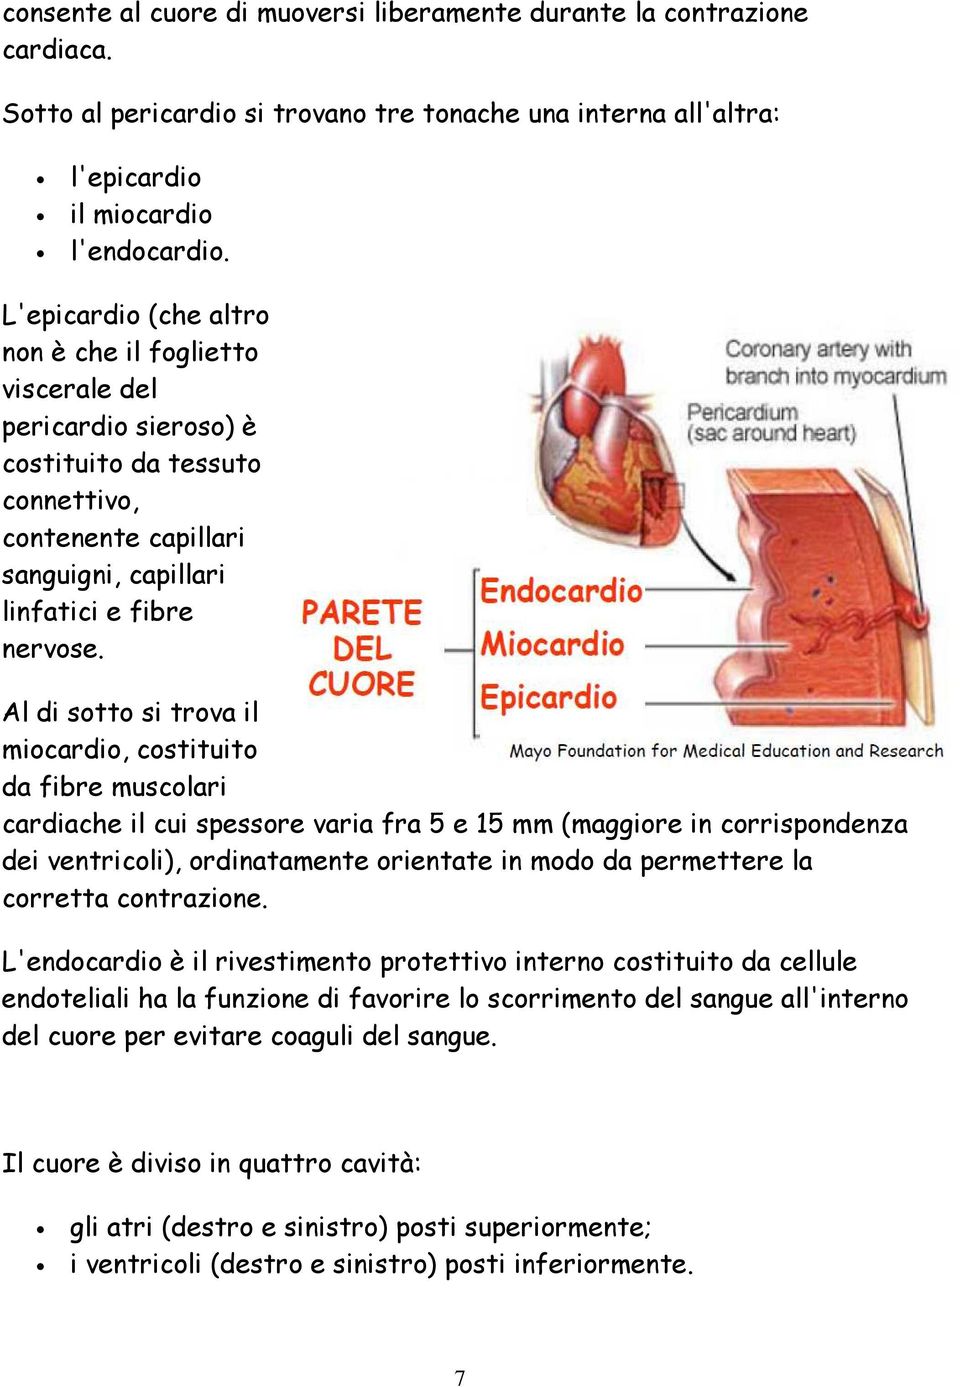 Al di sotto si trova il miocardio, costituito da fibre muscolari cardiache il cui spessore varia fra 5 e 15 mm (maggiore in corrispondenza dei ventricoli), ordinatamente orientate in modo da